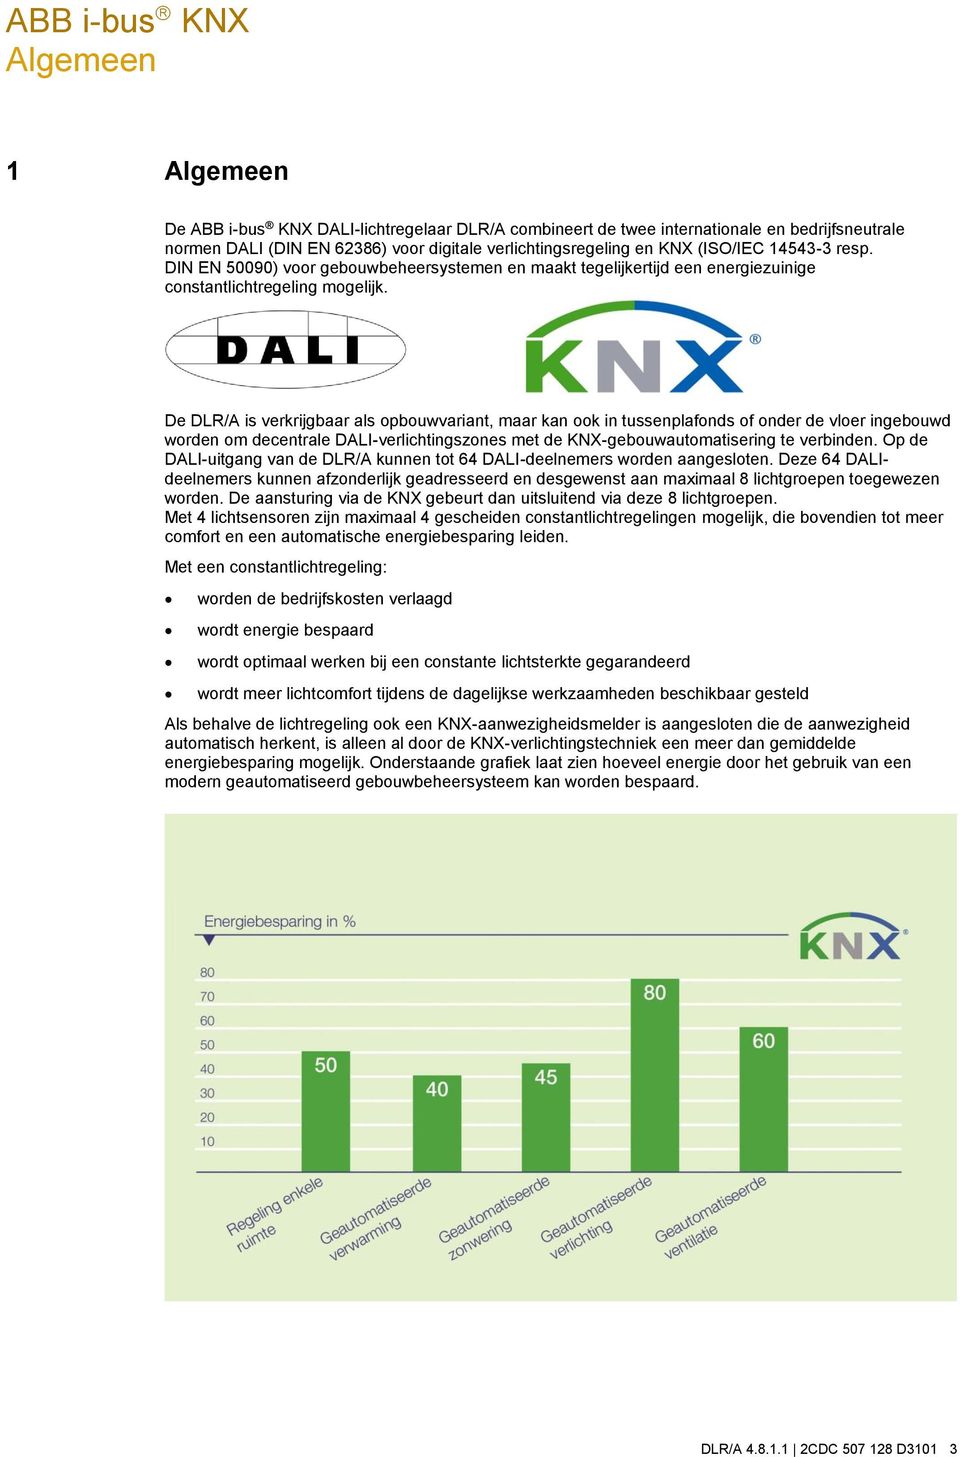 De DLR/A is verkrijgbaar als opbouwvariant, maar kan ook in tussenplafonds of onder de vloer ingebouwd worden om decentrale DALI-verlichtingszones met de KNX-gebouwautomatisering te verbinden.